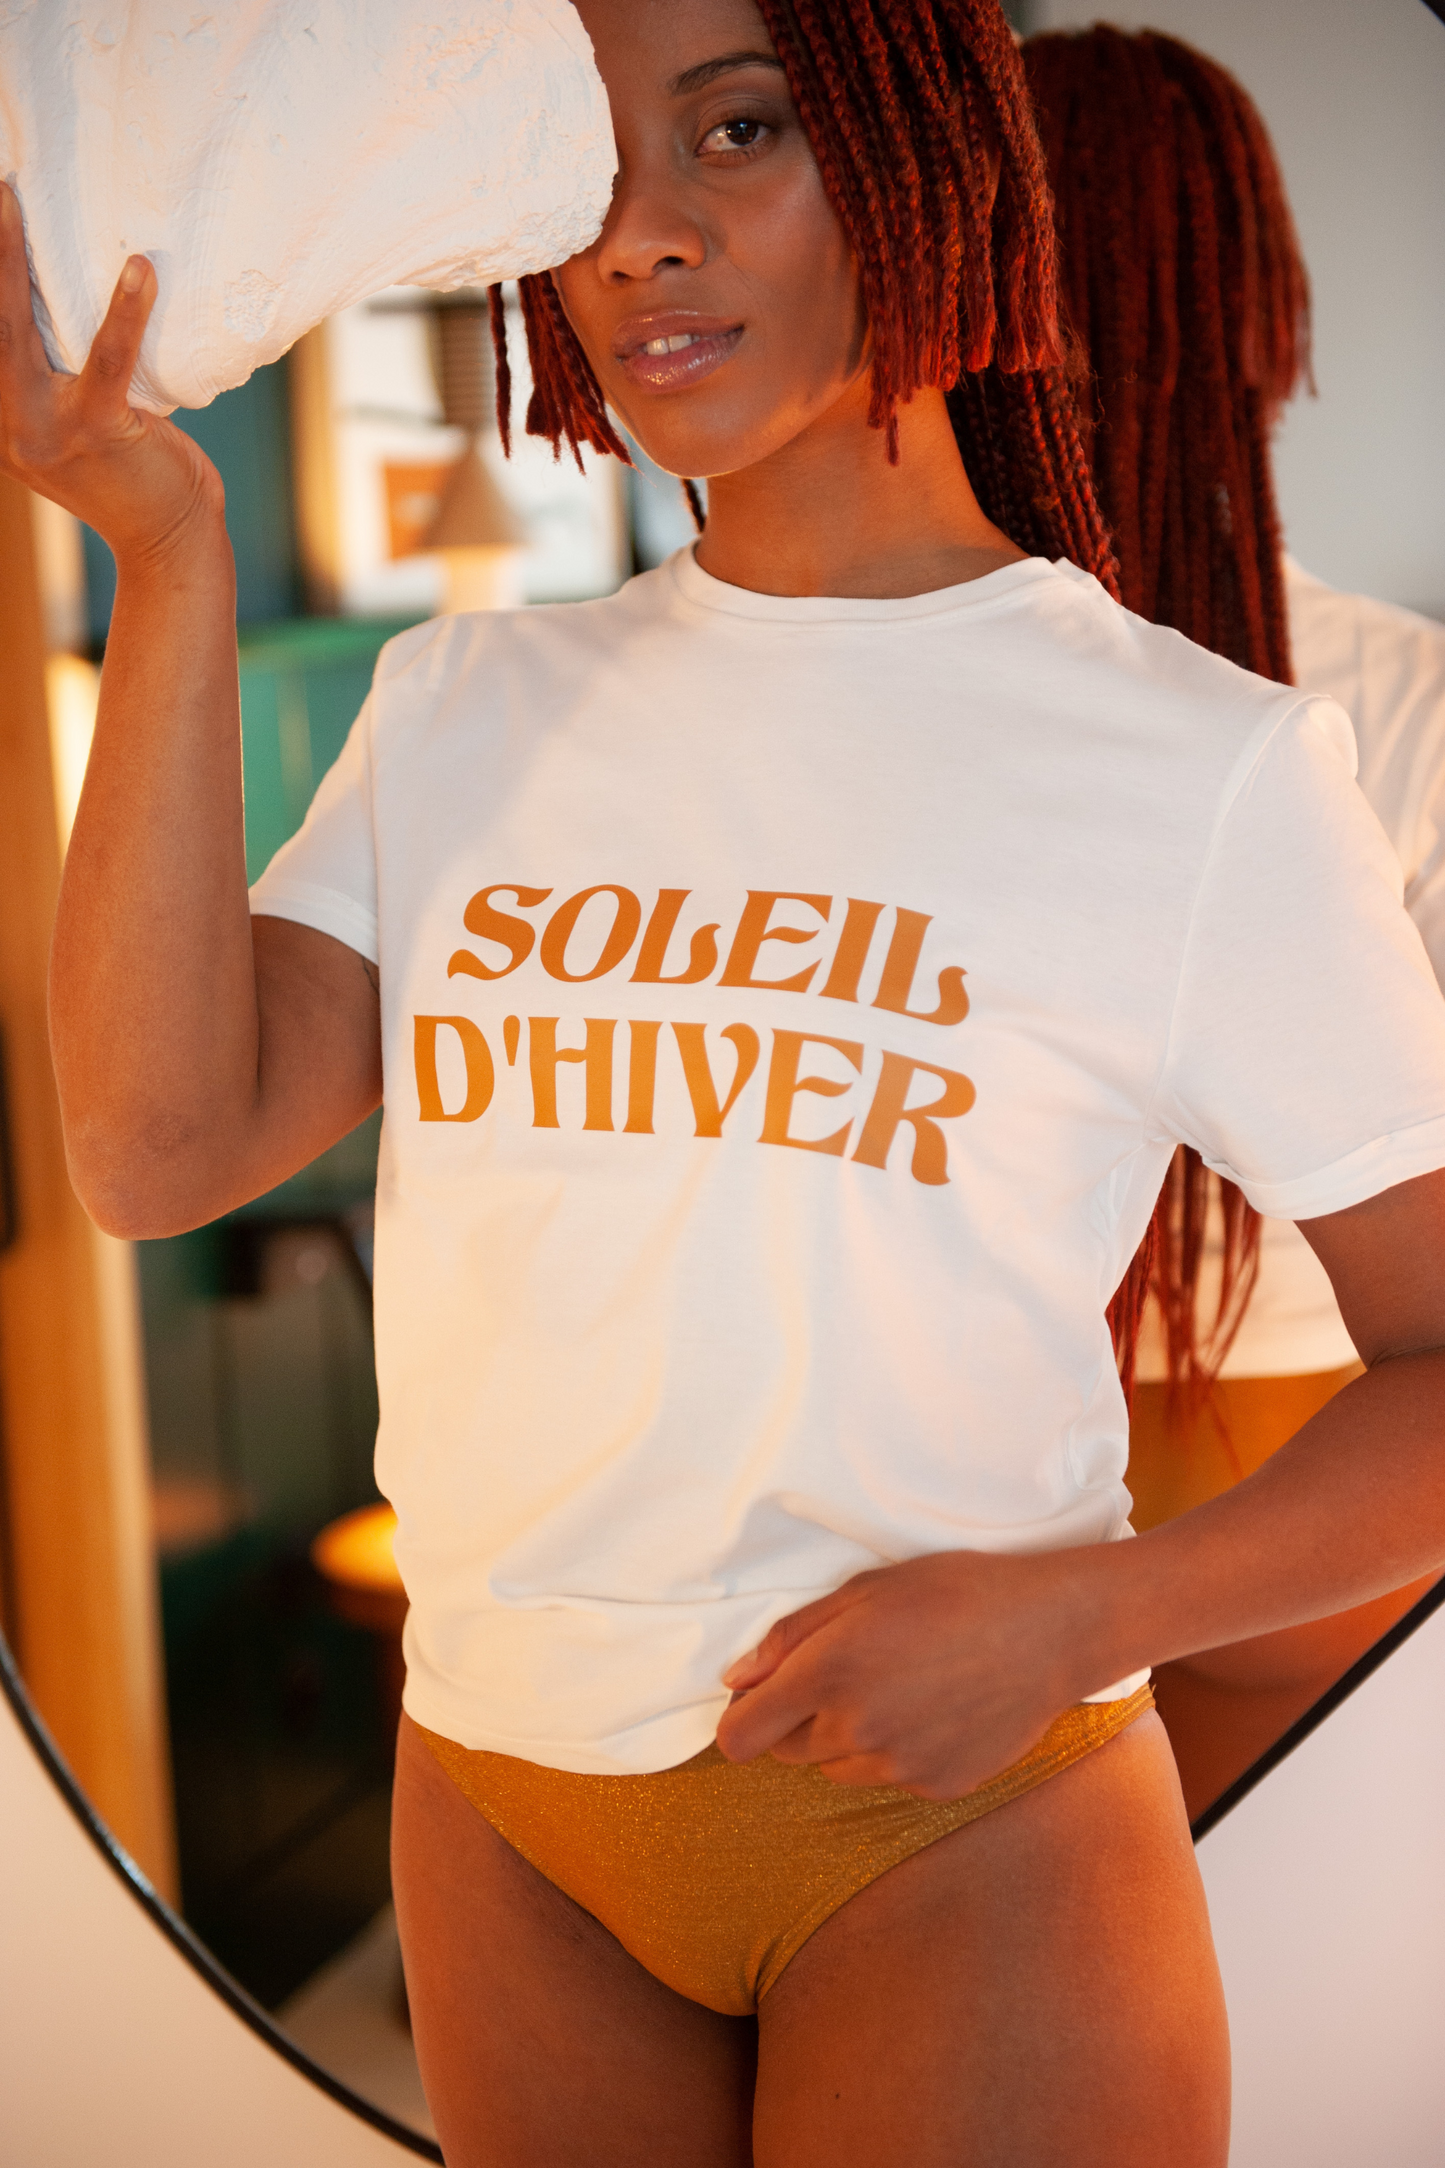 Le T-Shirt Soleil d'Hiver